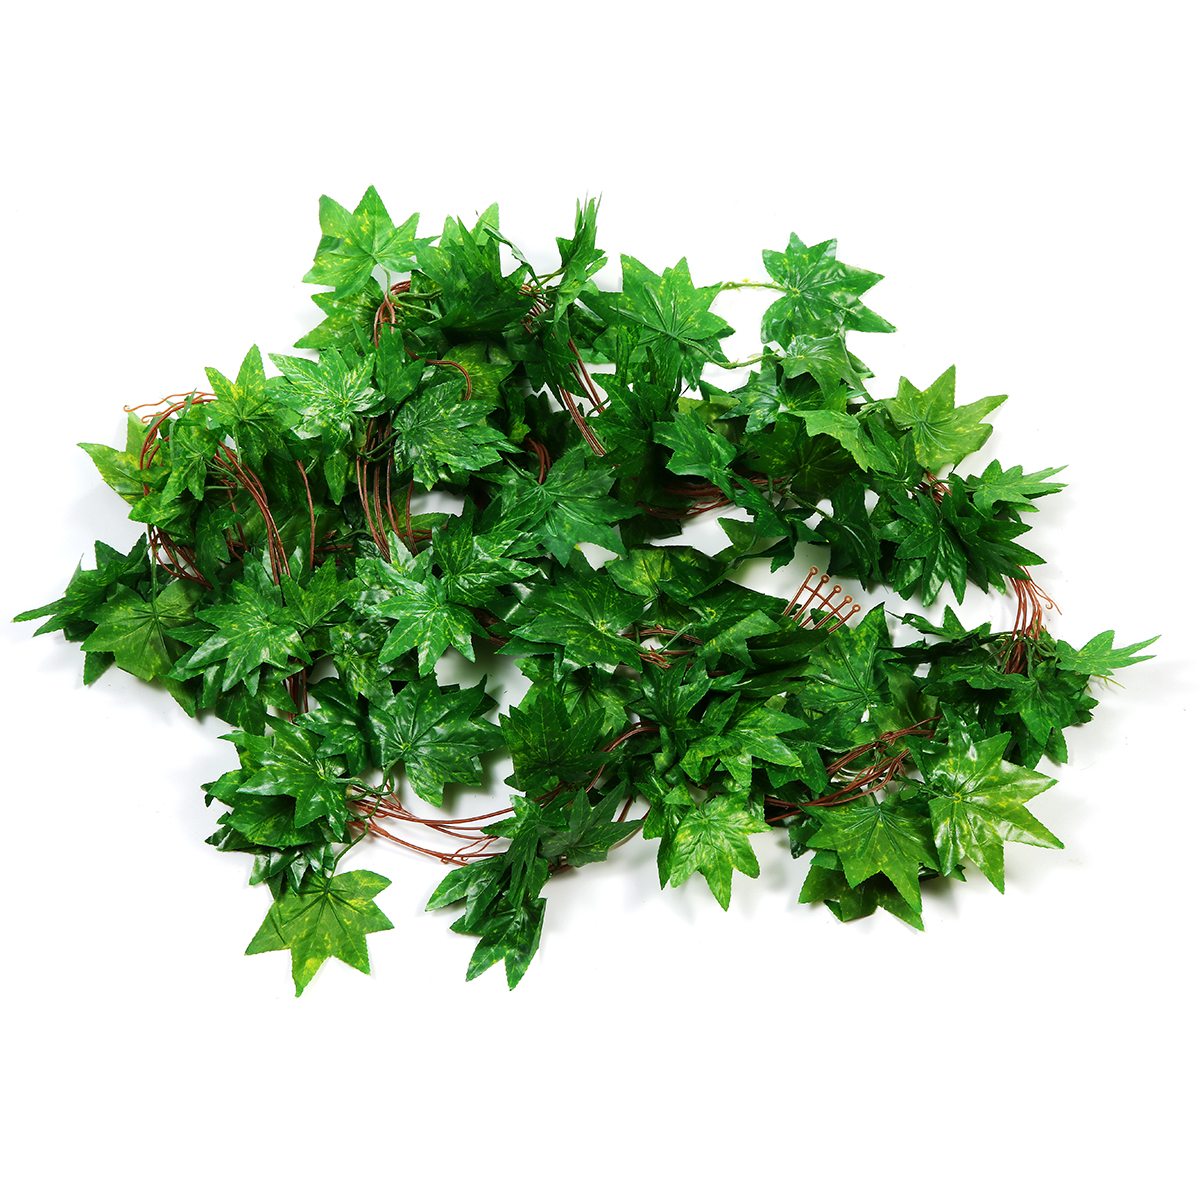 GreenRed-Maple-Leaf-Artificial-Vine-Garland-Foliage-Plant-Wedding-Party-Decor-1714788-8